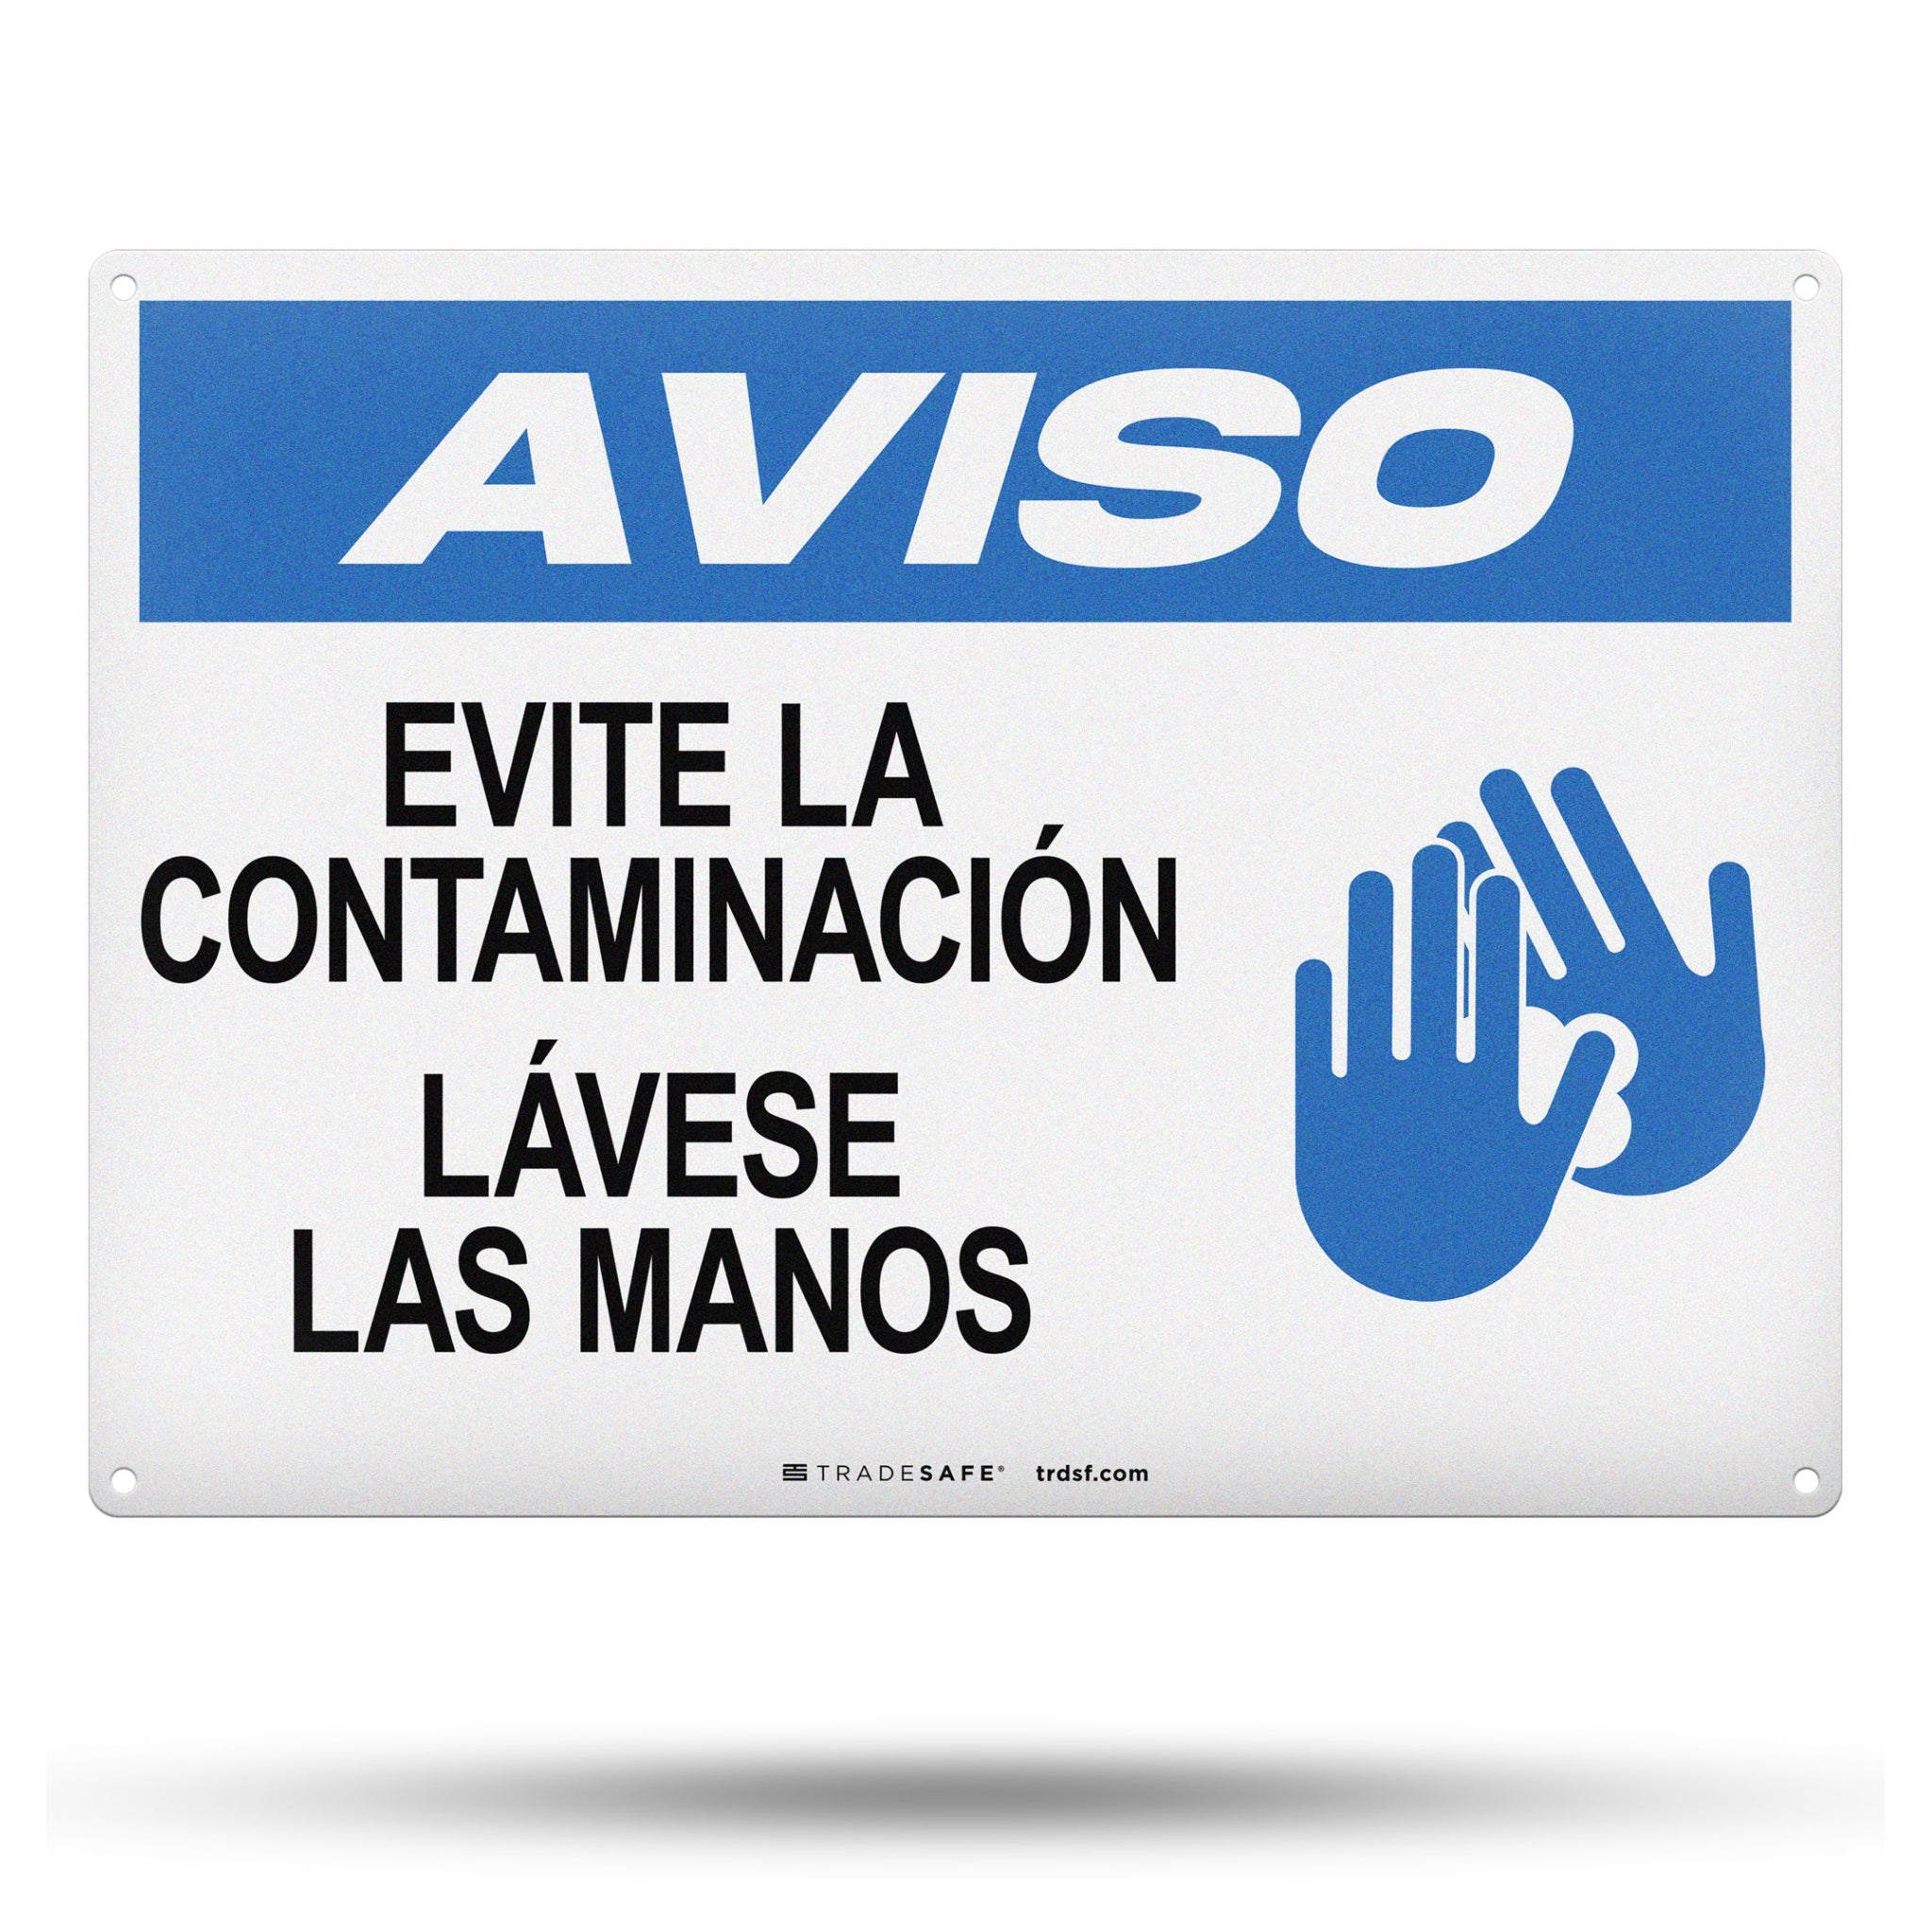 Evite La Contaminación Lávese Las Manos (Avoid Contamination Wash Your Hands) Aluminum Sign